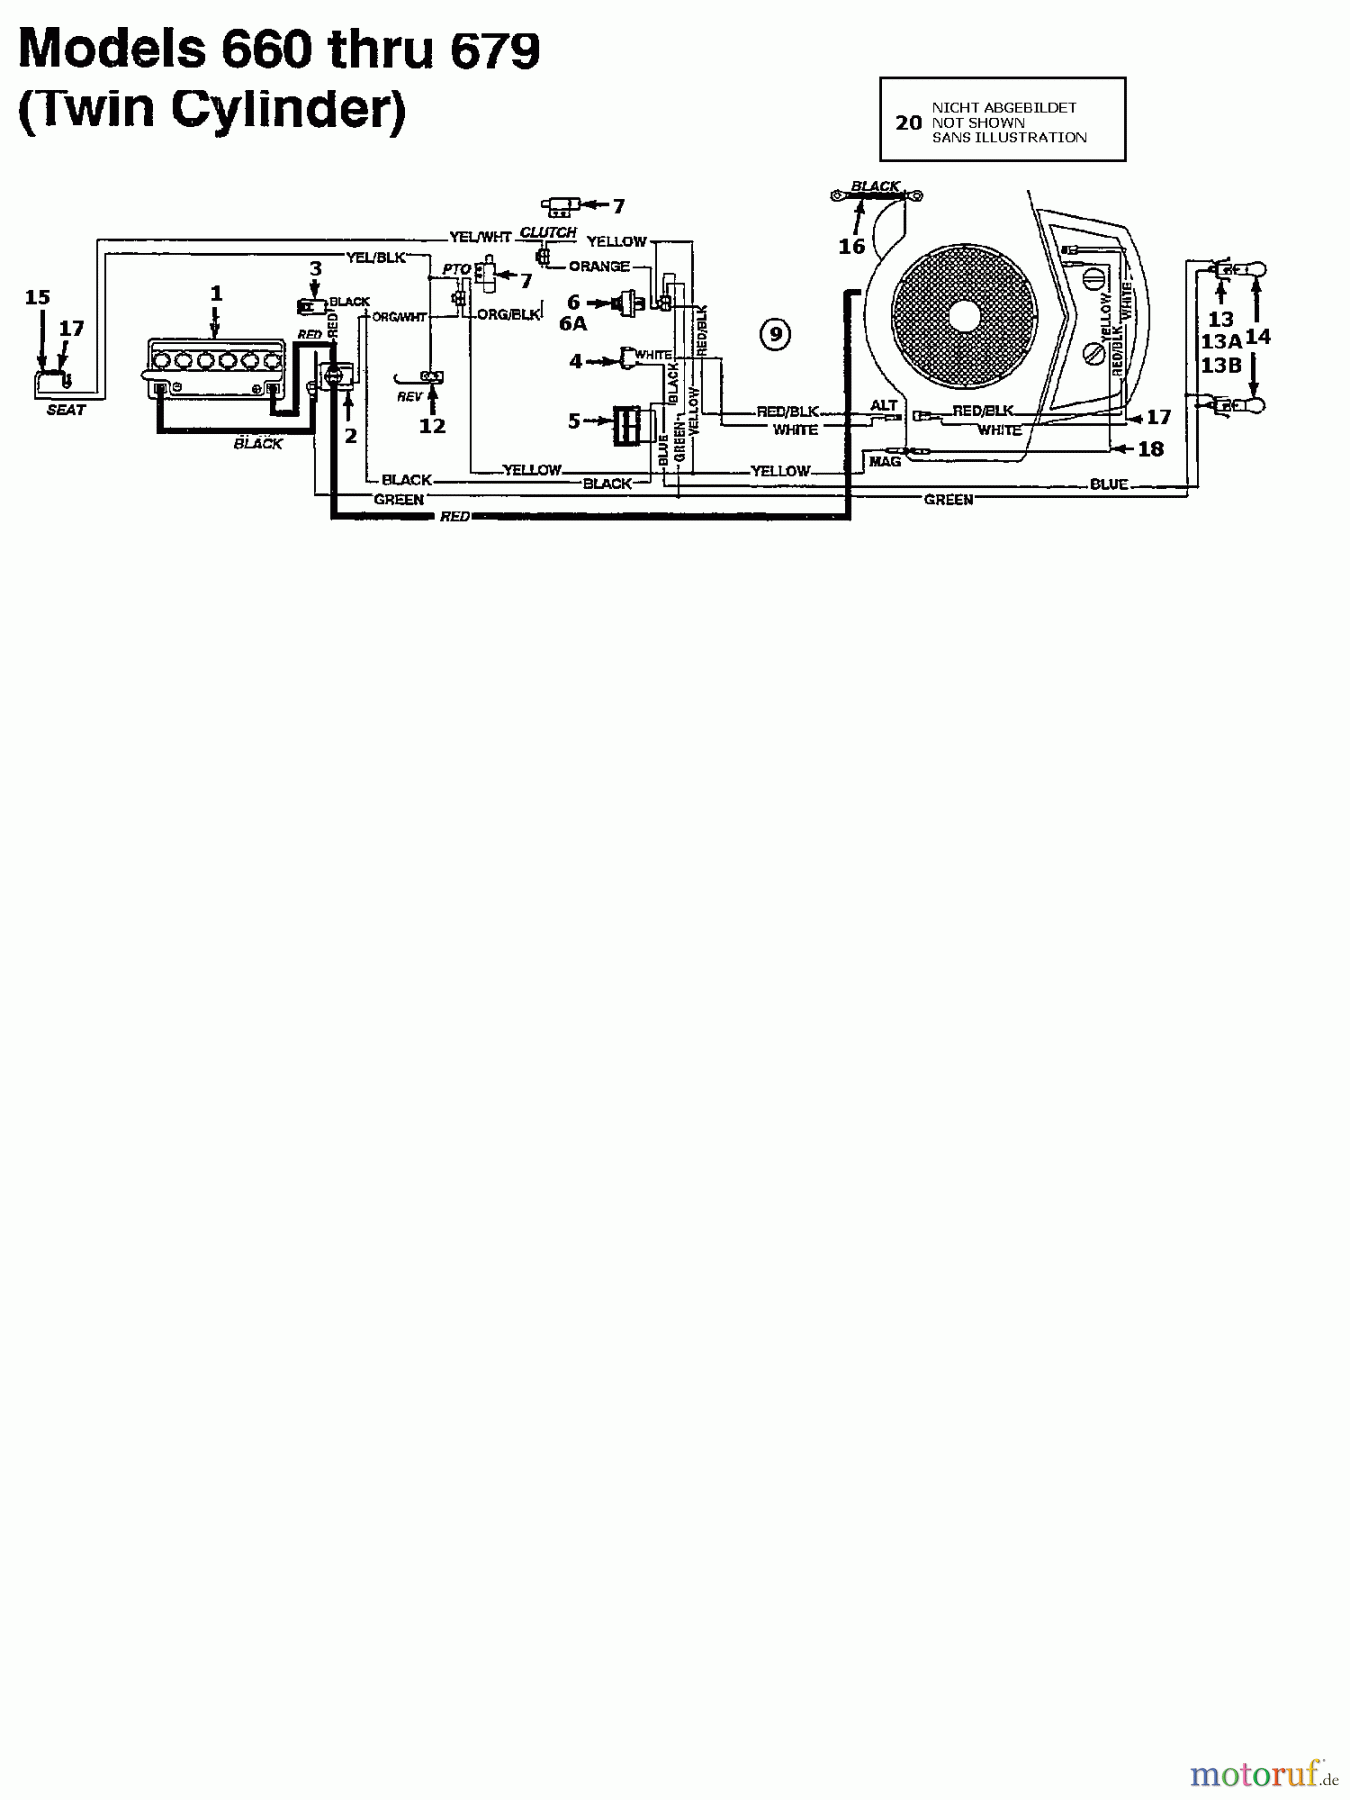  Columbia Rasentraktoren 145/107 135M671G626  (1995) Schaltplan 2 Zylinder